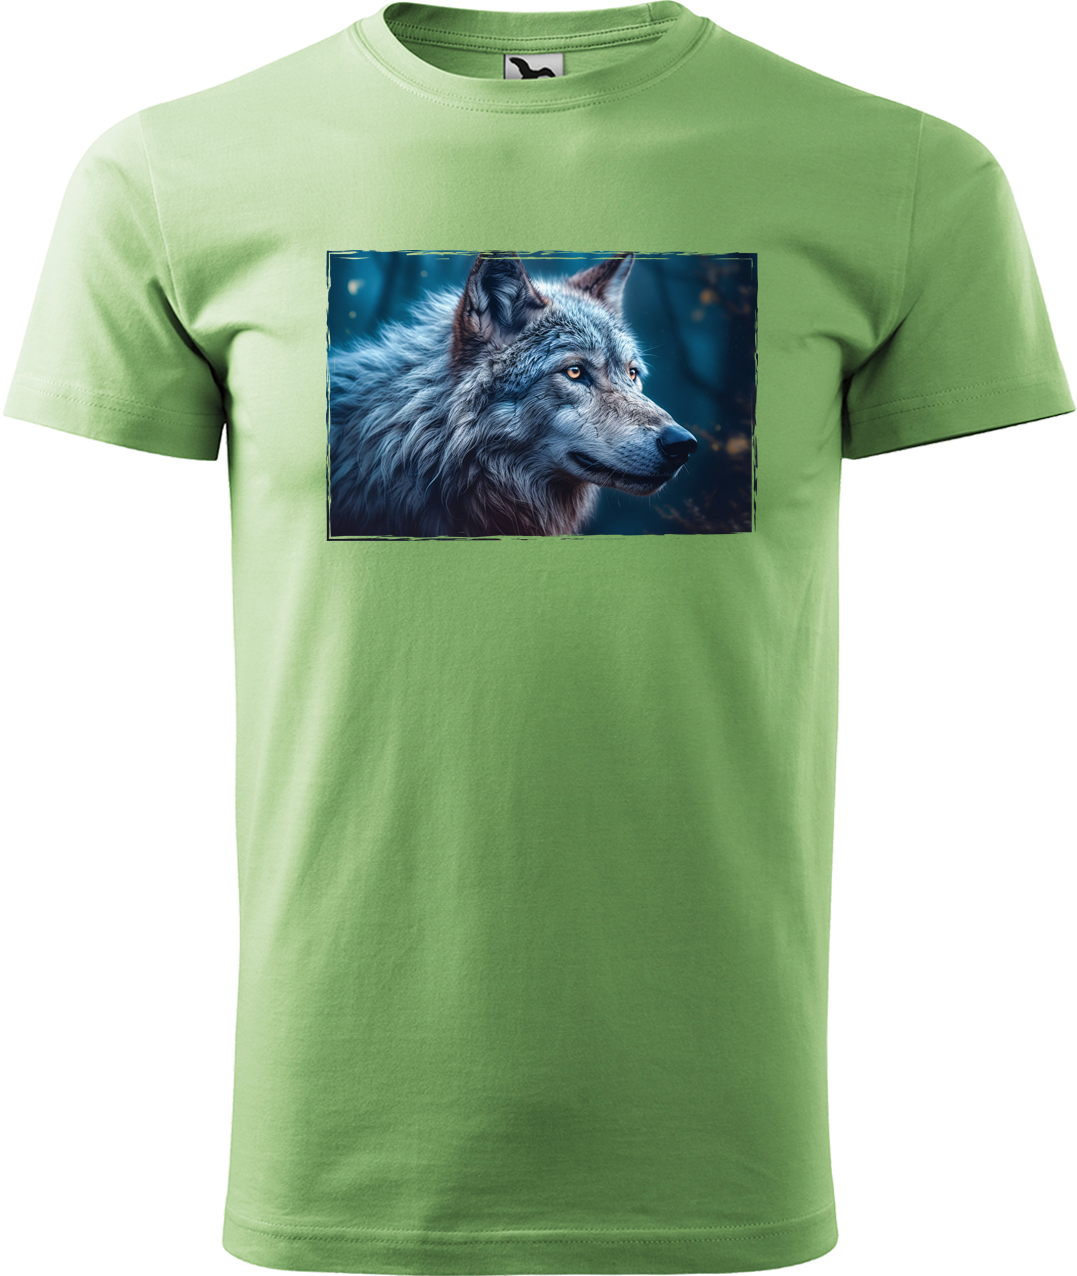 Pánské tričko s vlkem - Modrý vlk Velikost: M, Barva: Trávově zelená (39)